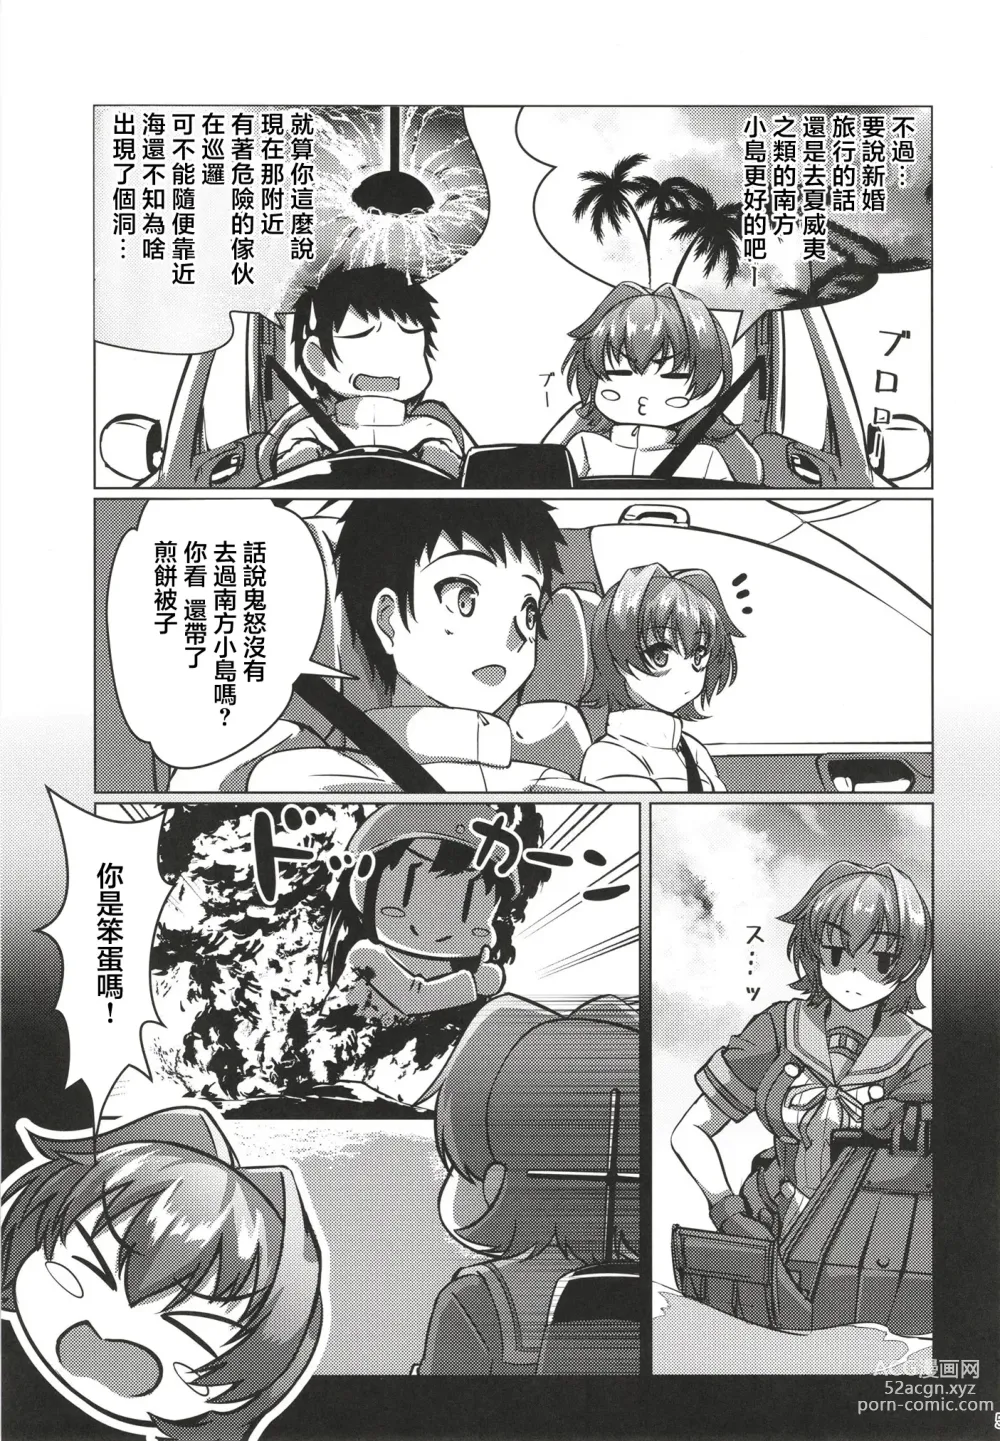 Page 5 of doujinshi 和鬼怒的新婚旅行的故事